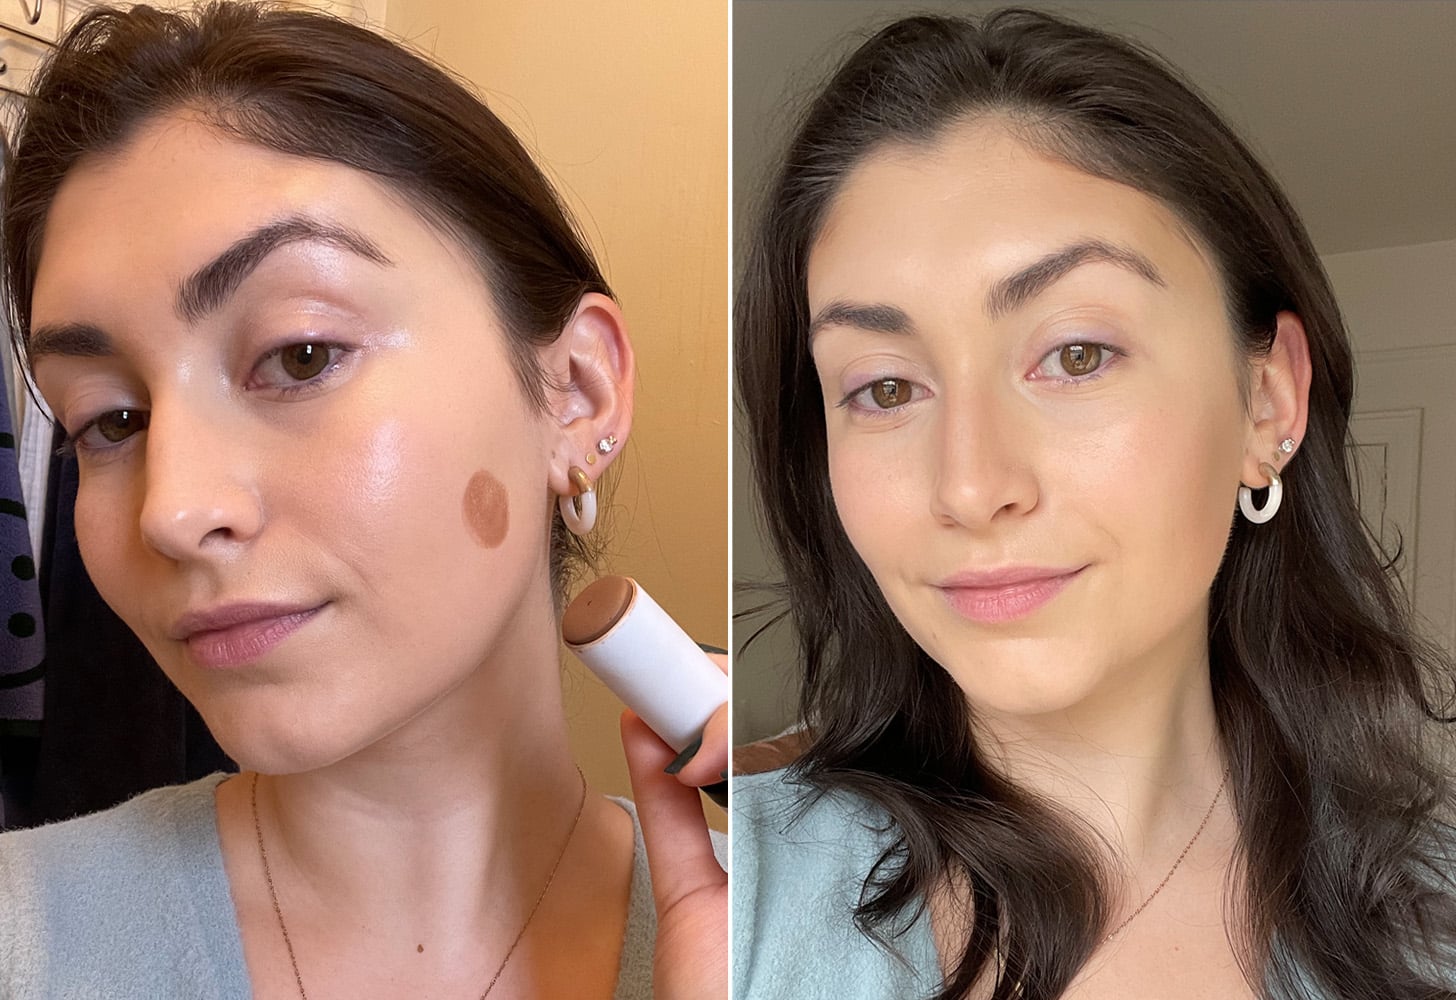 Share My Secret 3D Face-lifting And Contour Makeup Tips💖